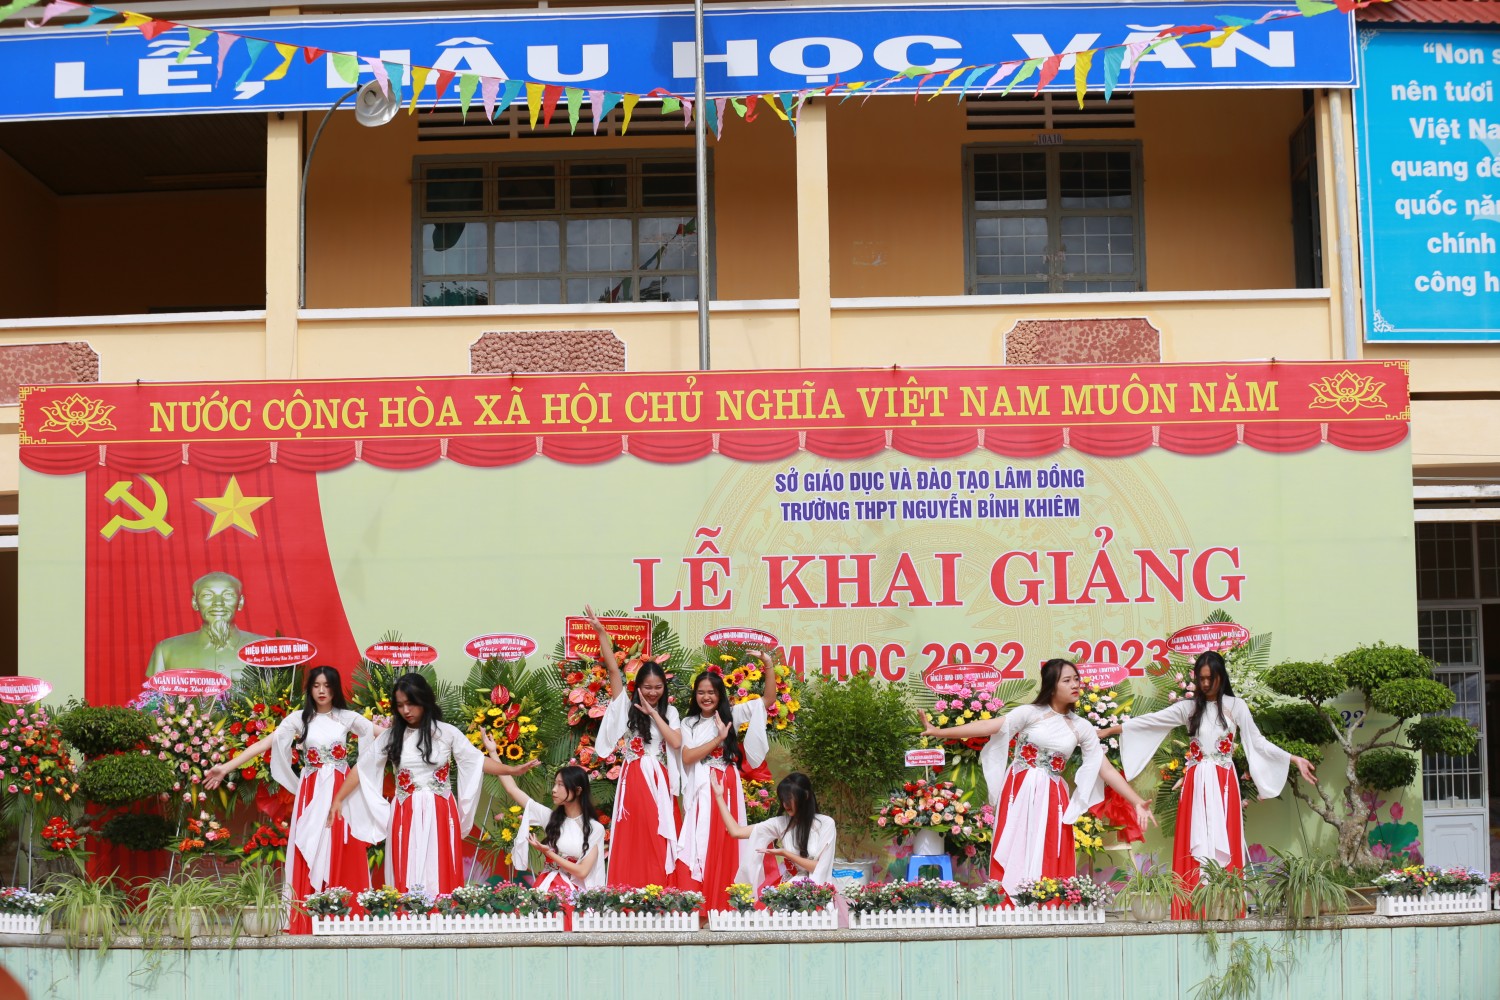 Trường THPT Nguyễn Bỉnh Khiêm tưng bừng tổ chức buổi lễ khai giảng năm học mới